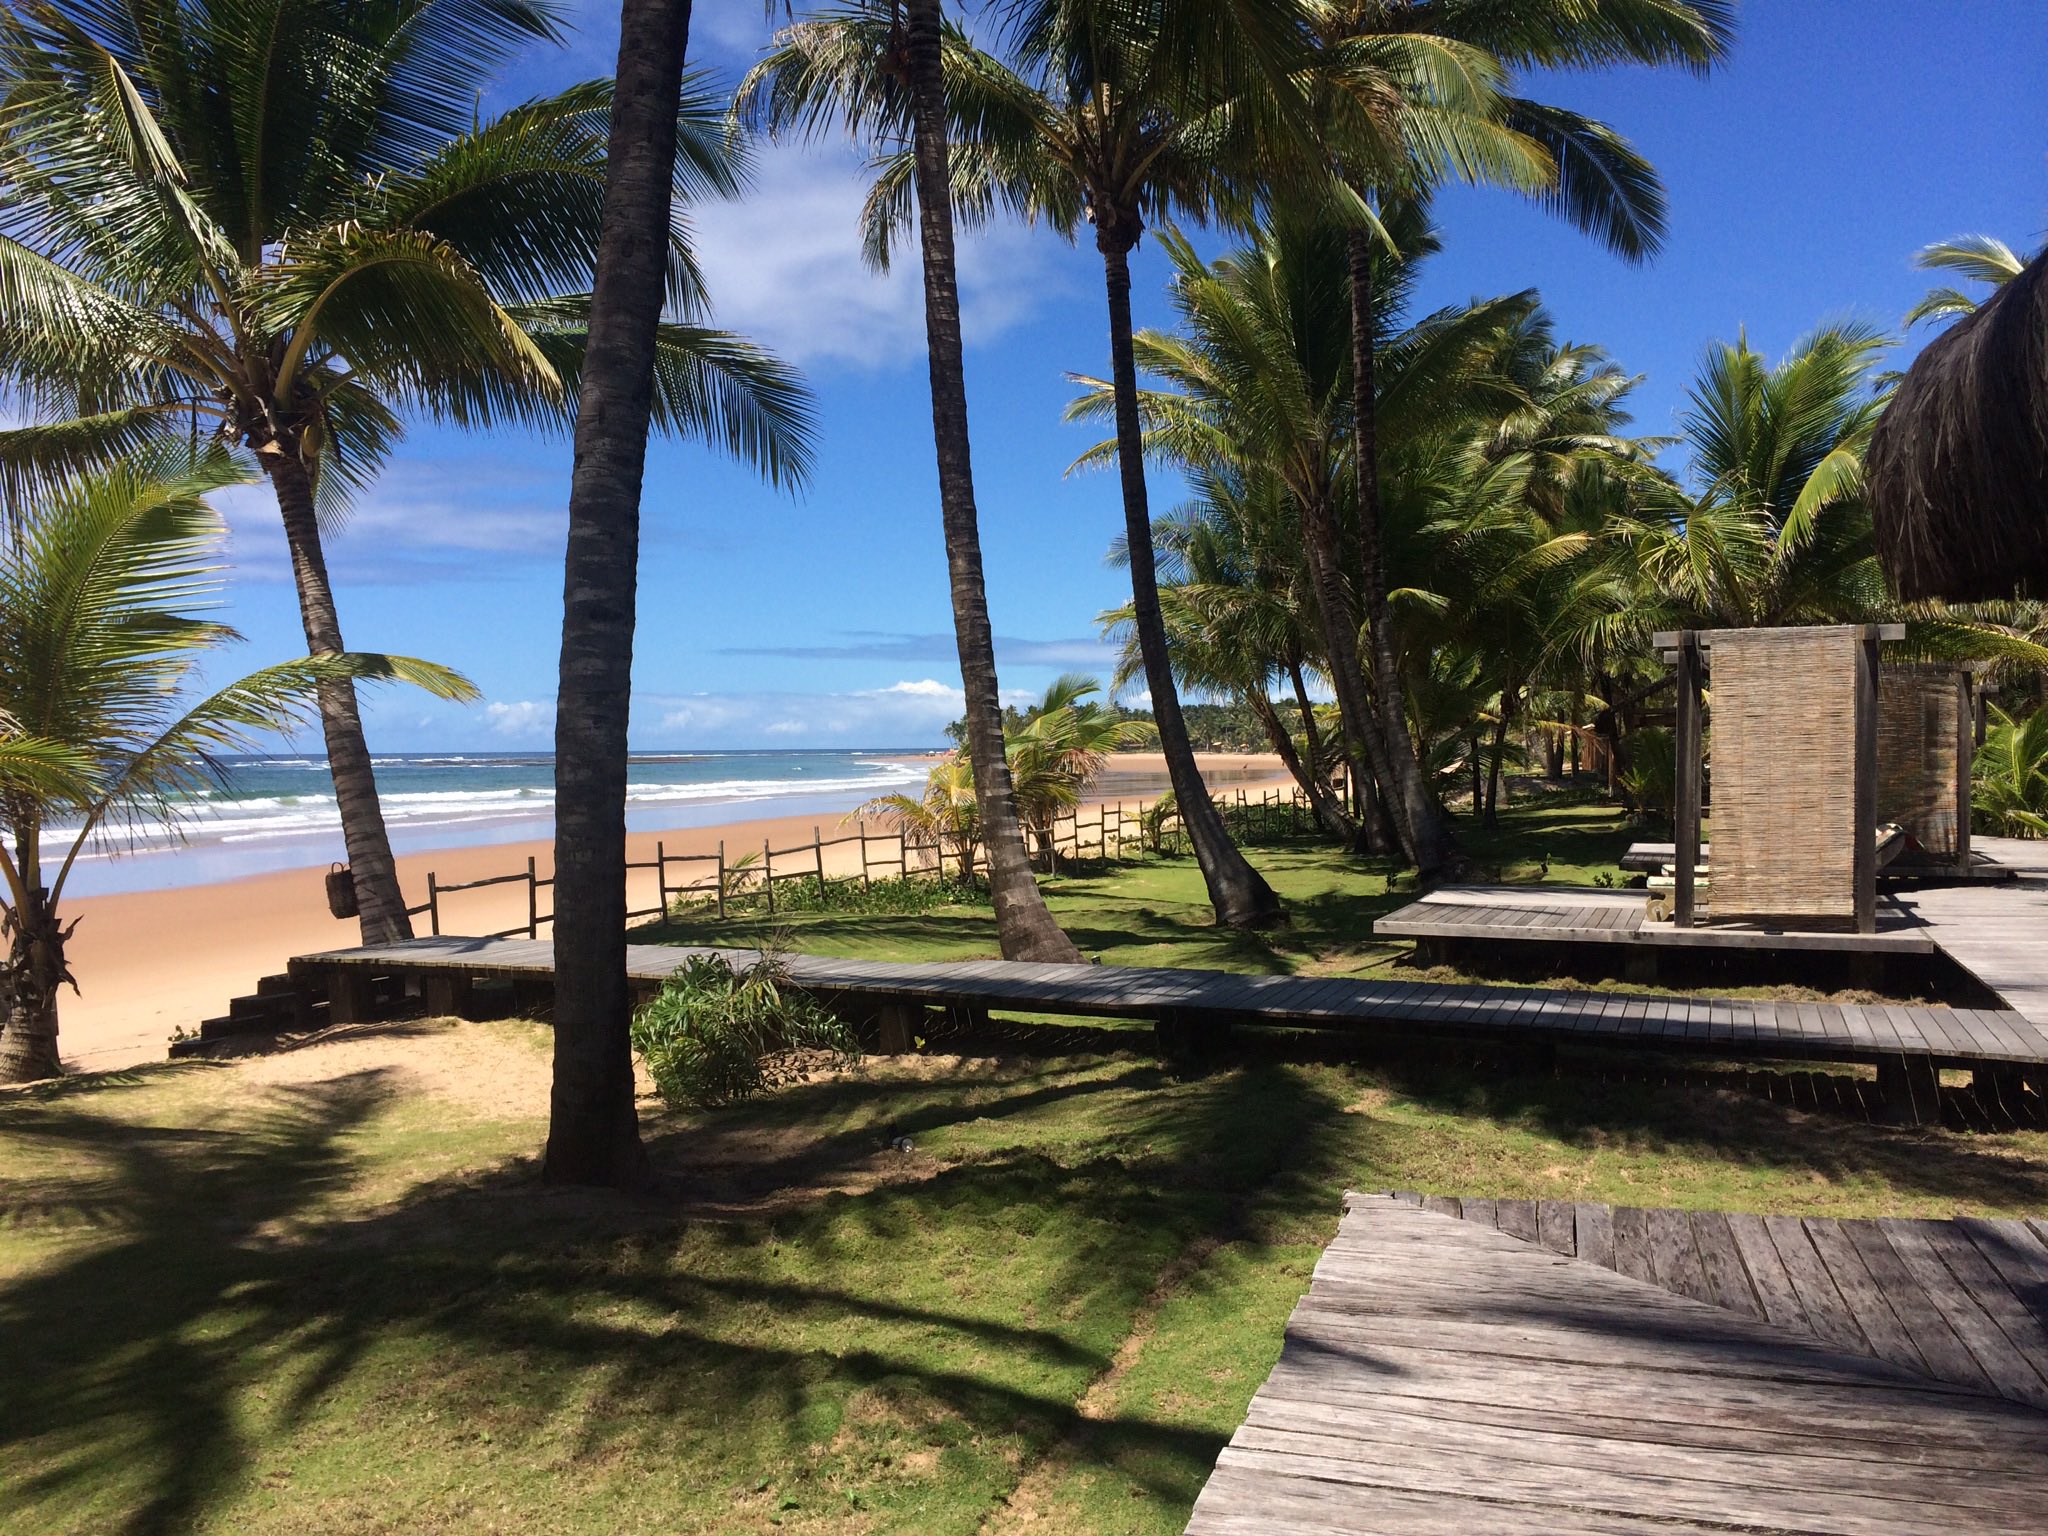 Casamento em praia paradisíaca na Bahia entra na mira do MPF